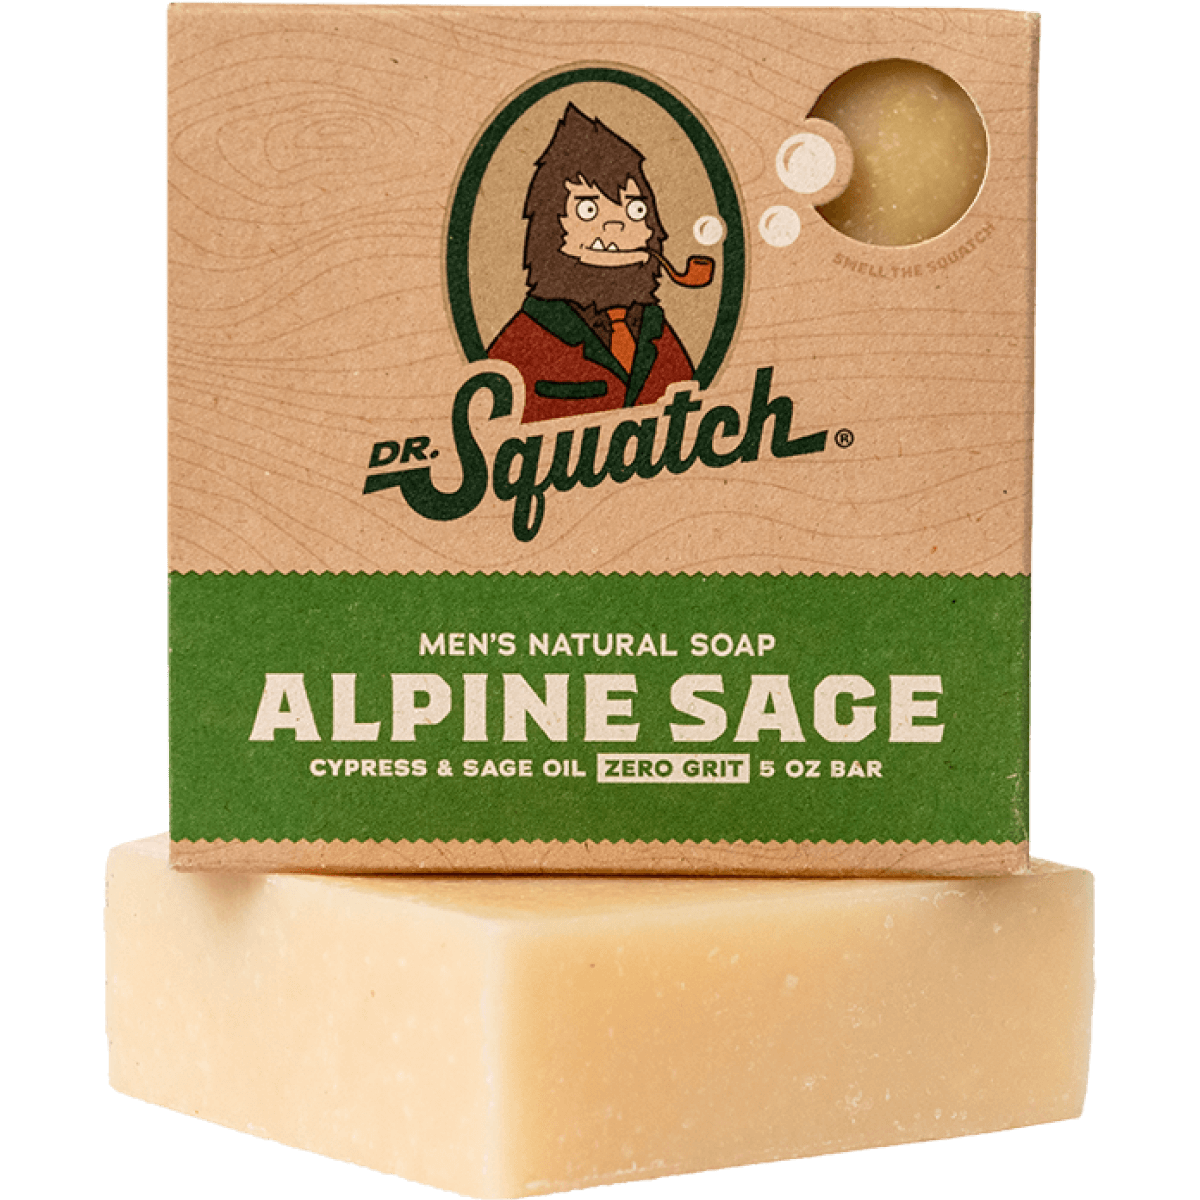 Dr. Squatch Men's Natural Soap – Stache